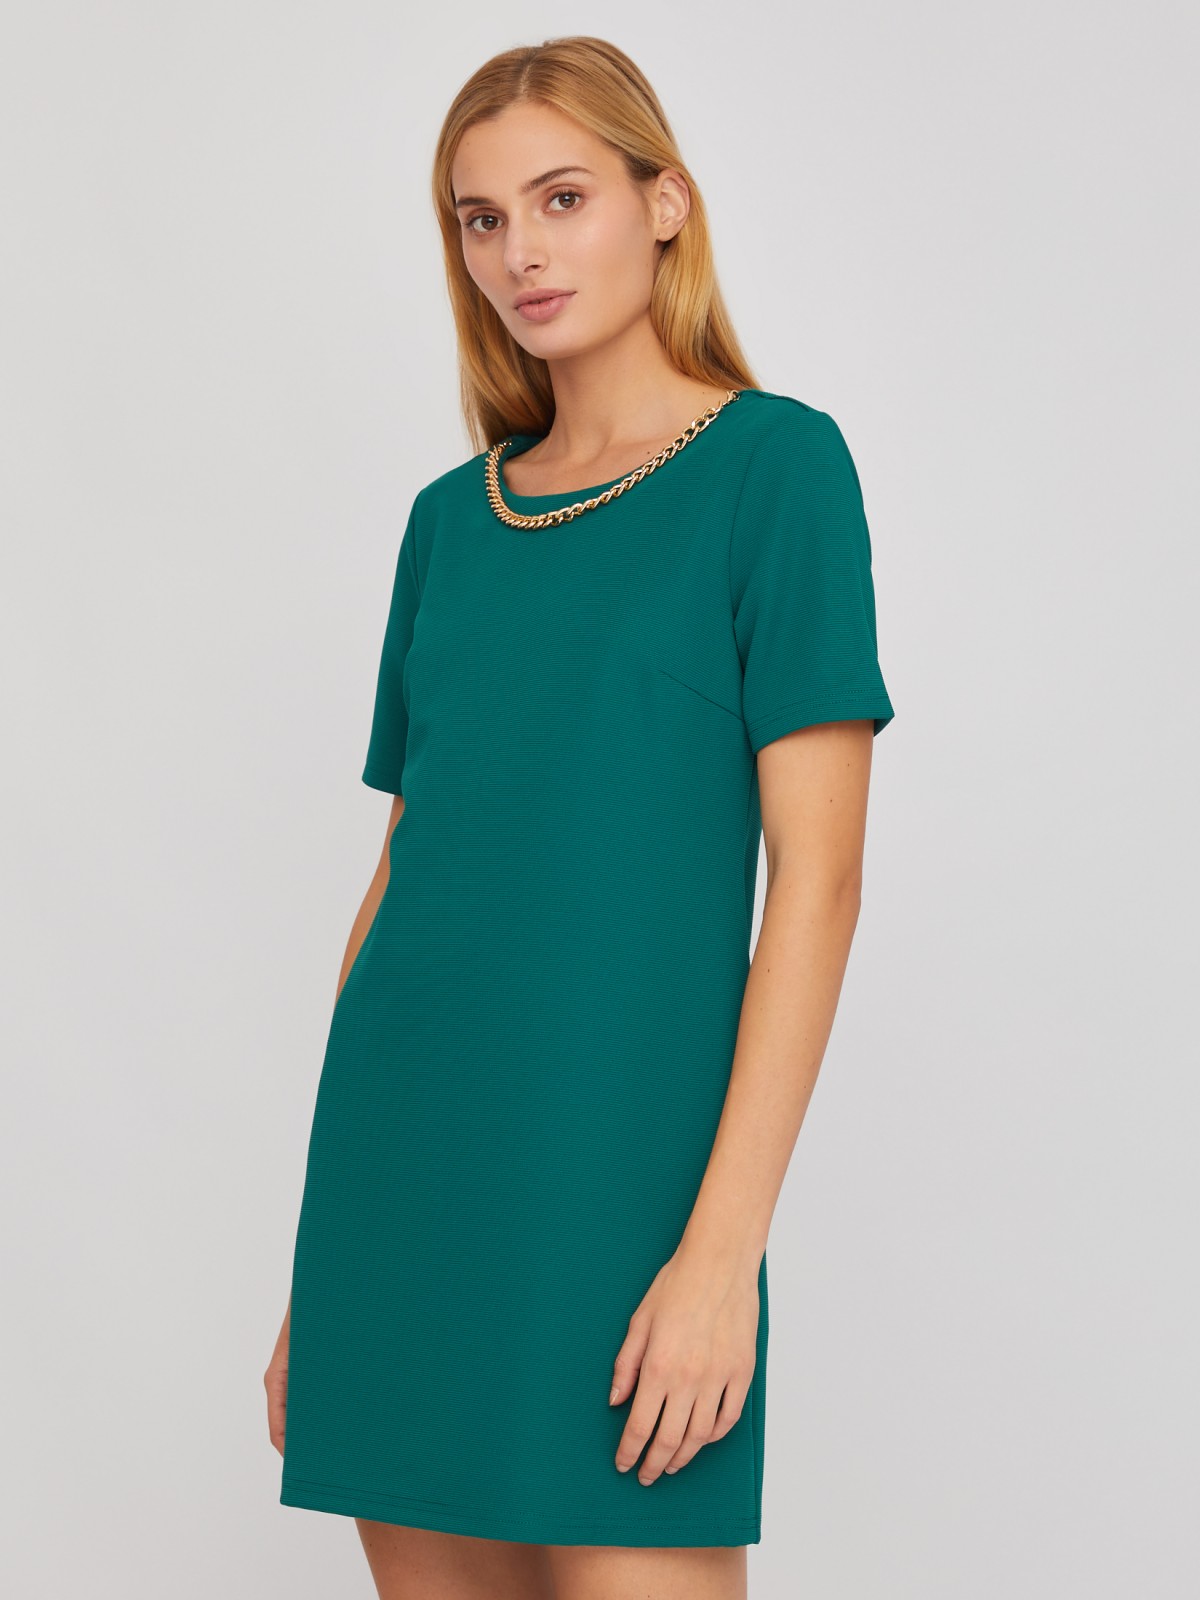 Платье длины мини с коротким рукавом и декоративной цепочкой zolla 02411819F472, цвет темно-зеленый, размер M